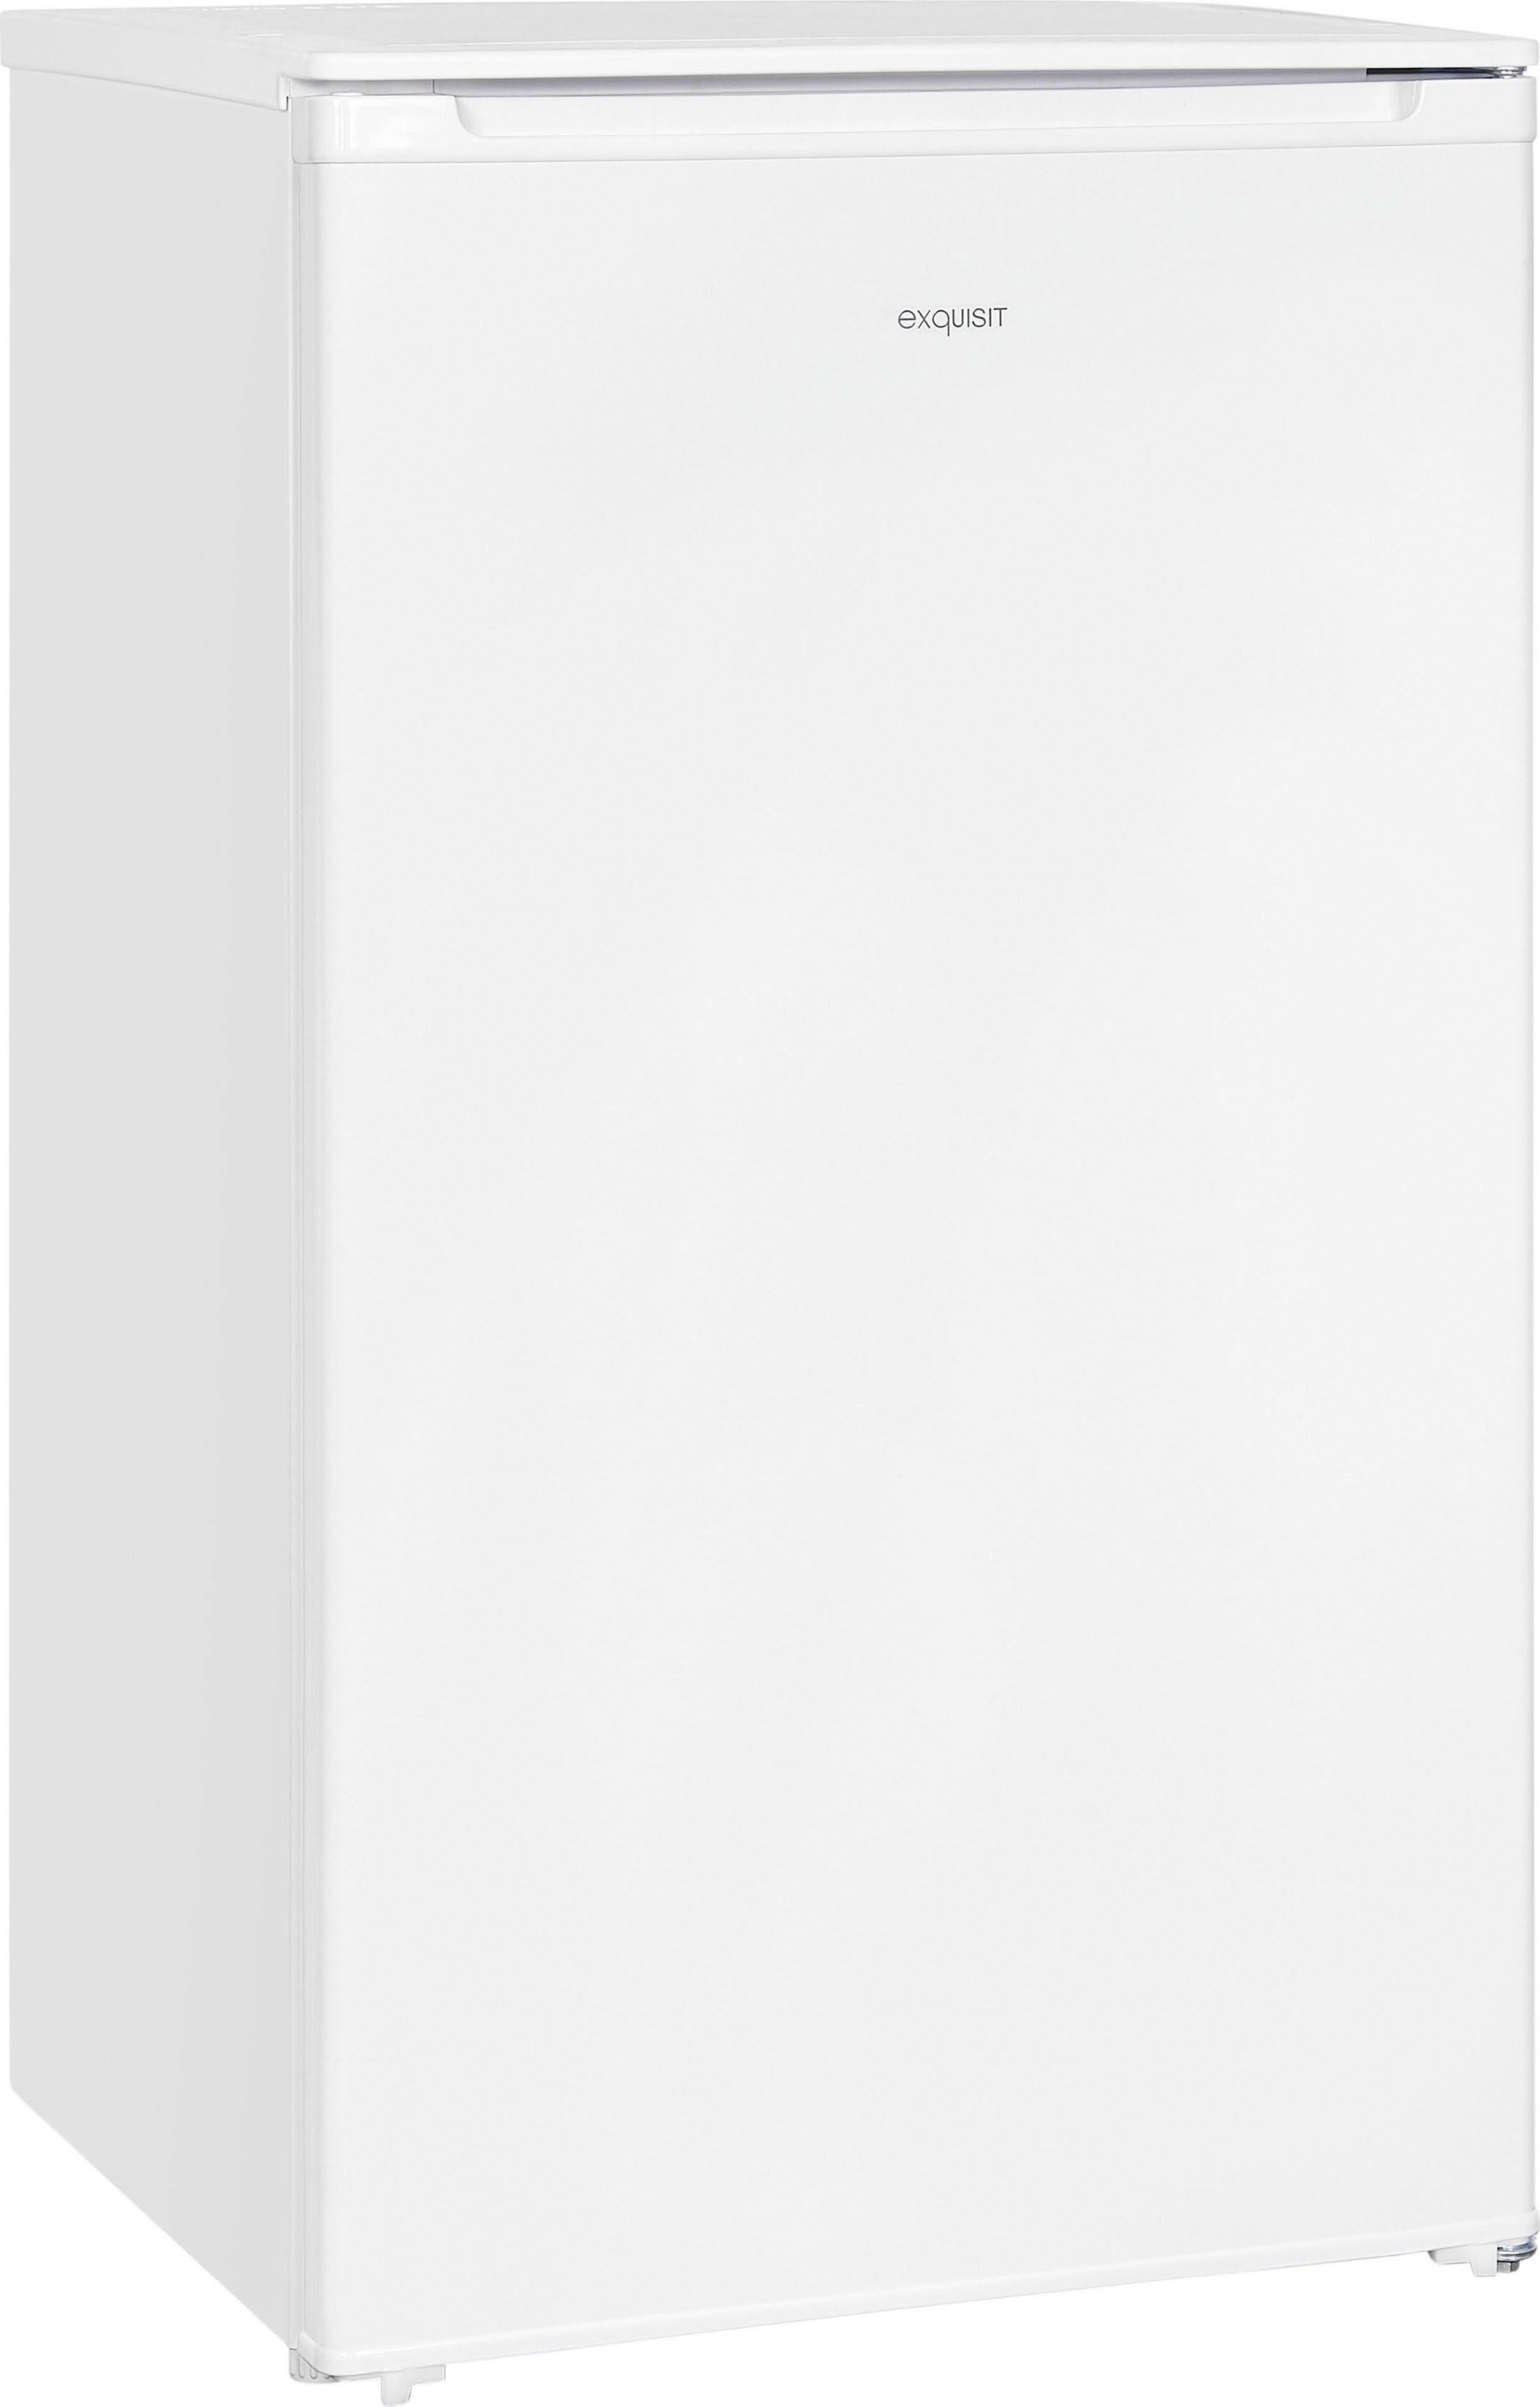 exquisit Vollraumkühlschrank KS116-V-041E weiss, 85 cm hoch, 48 cm breit